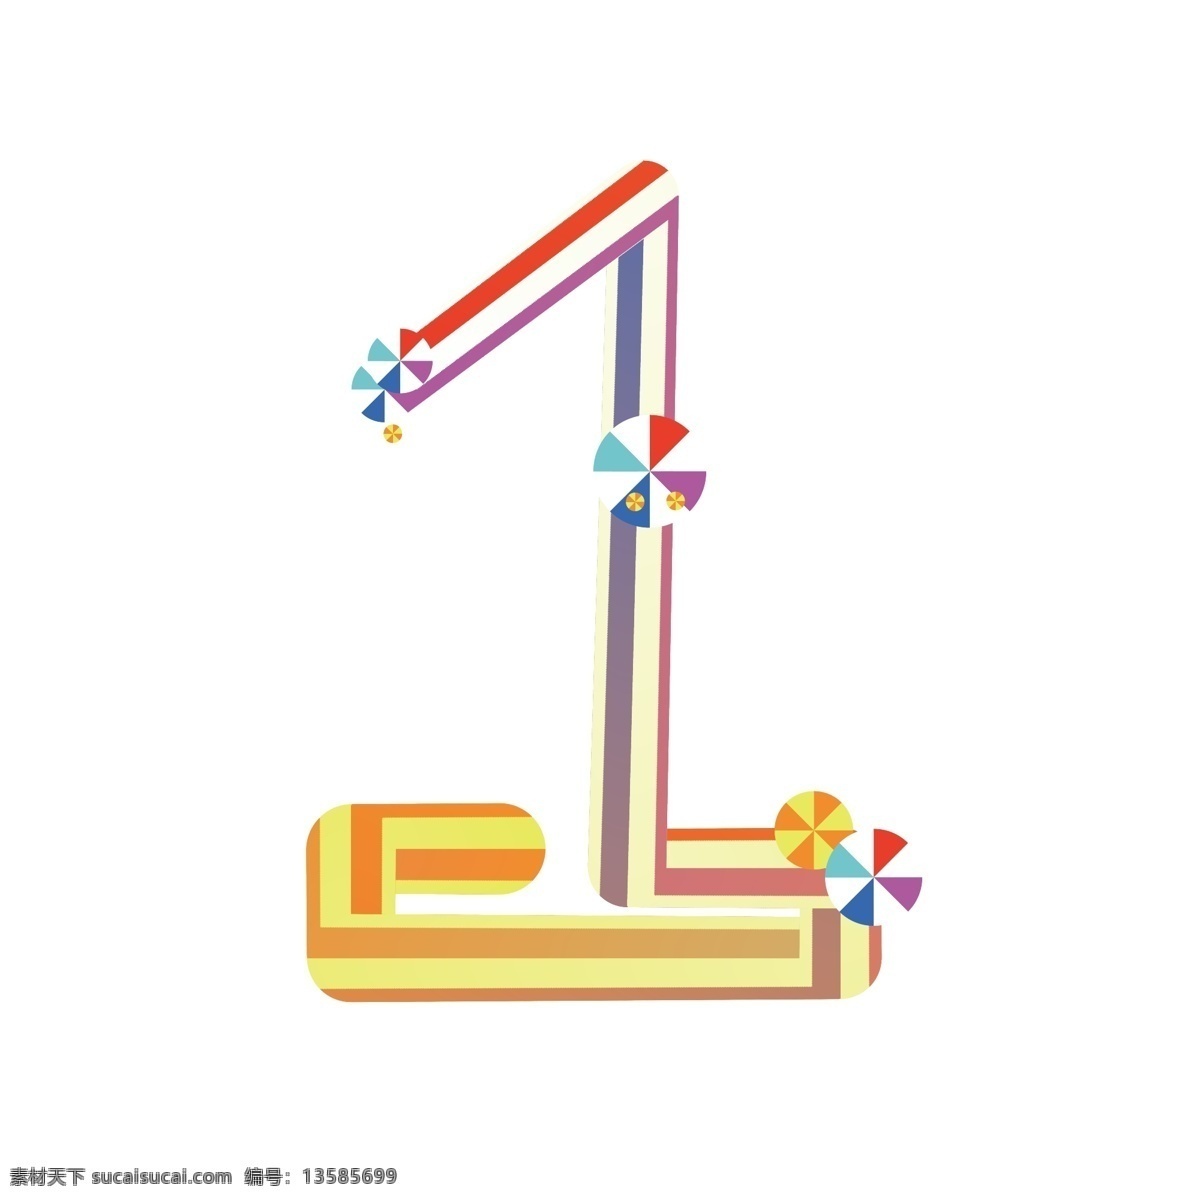 双十 倒计时 数字1 彩虹字 字体设计 创意设计 糖果字